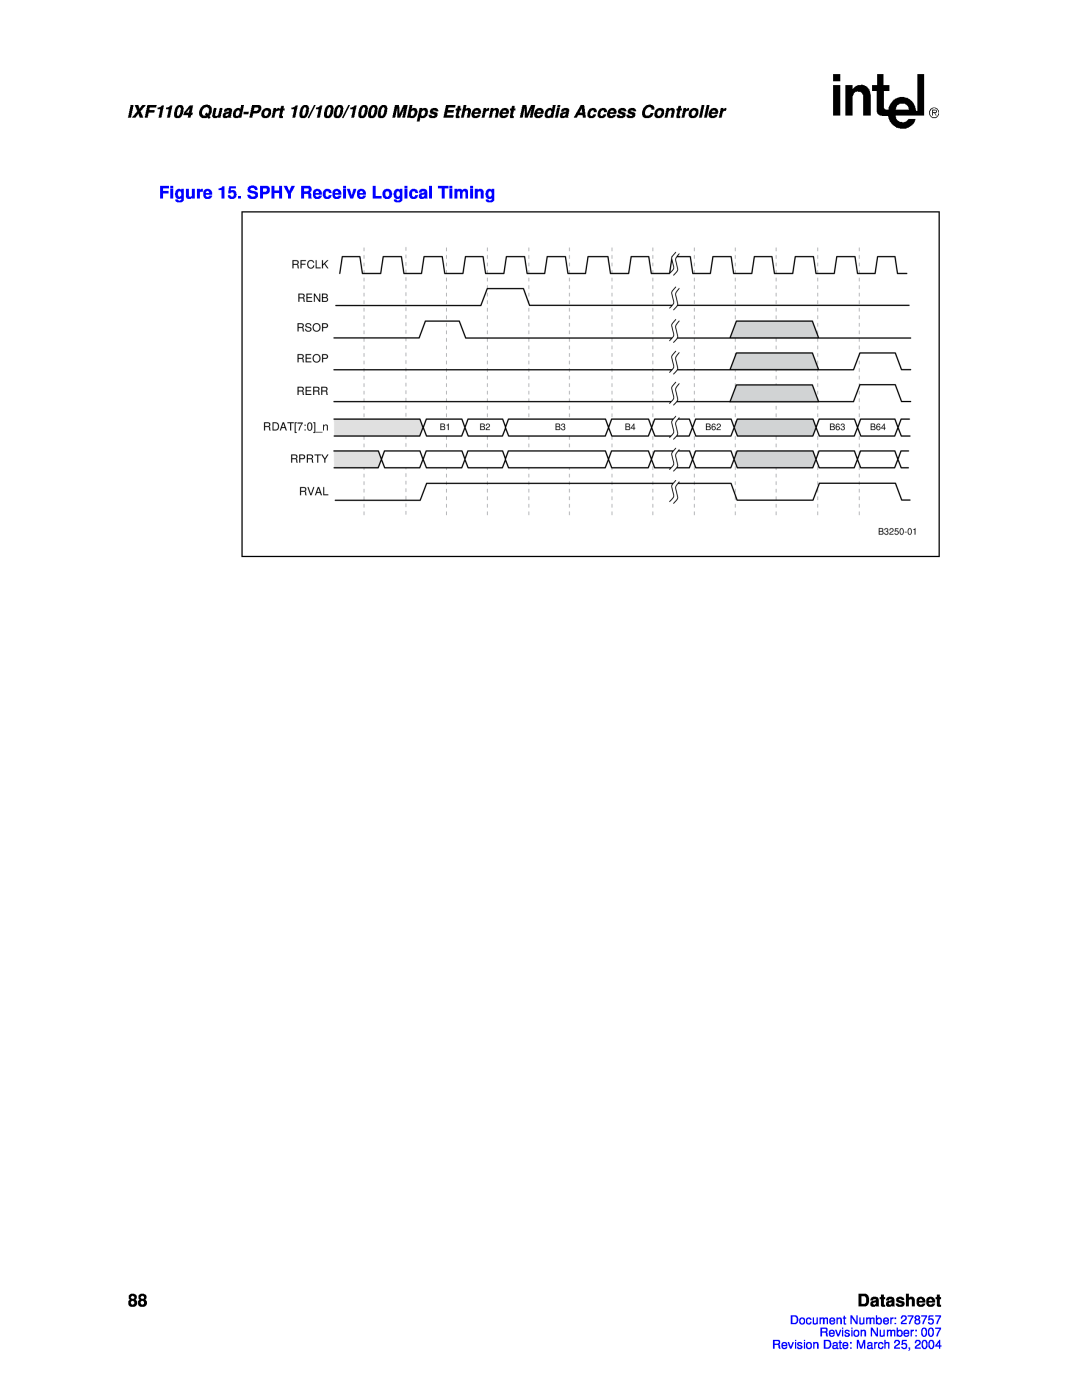 Intel IXF1104 manual SPHY Receive Logical Timing, Datasheet 